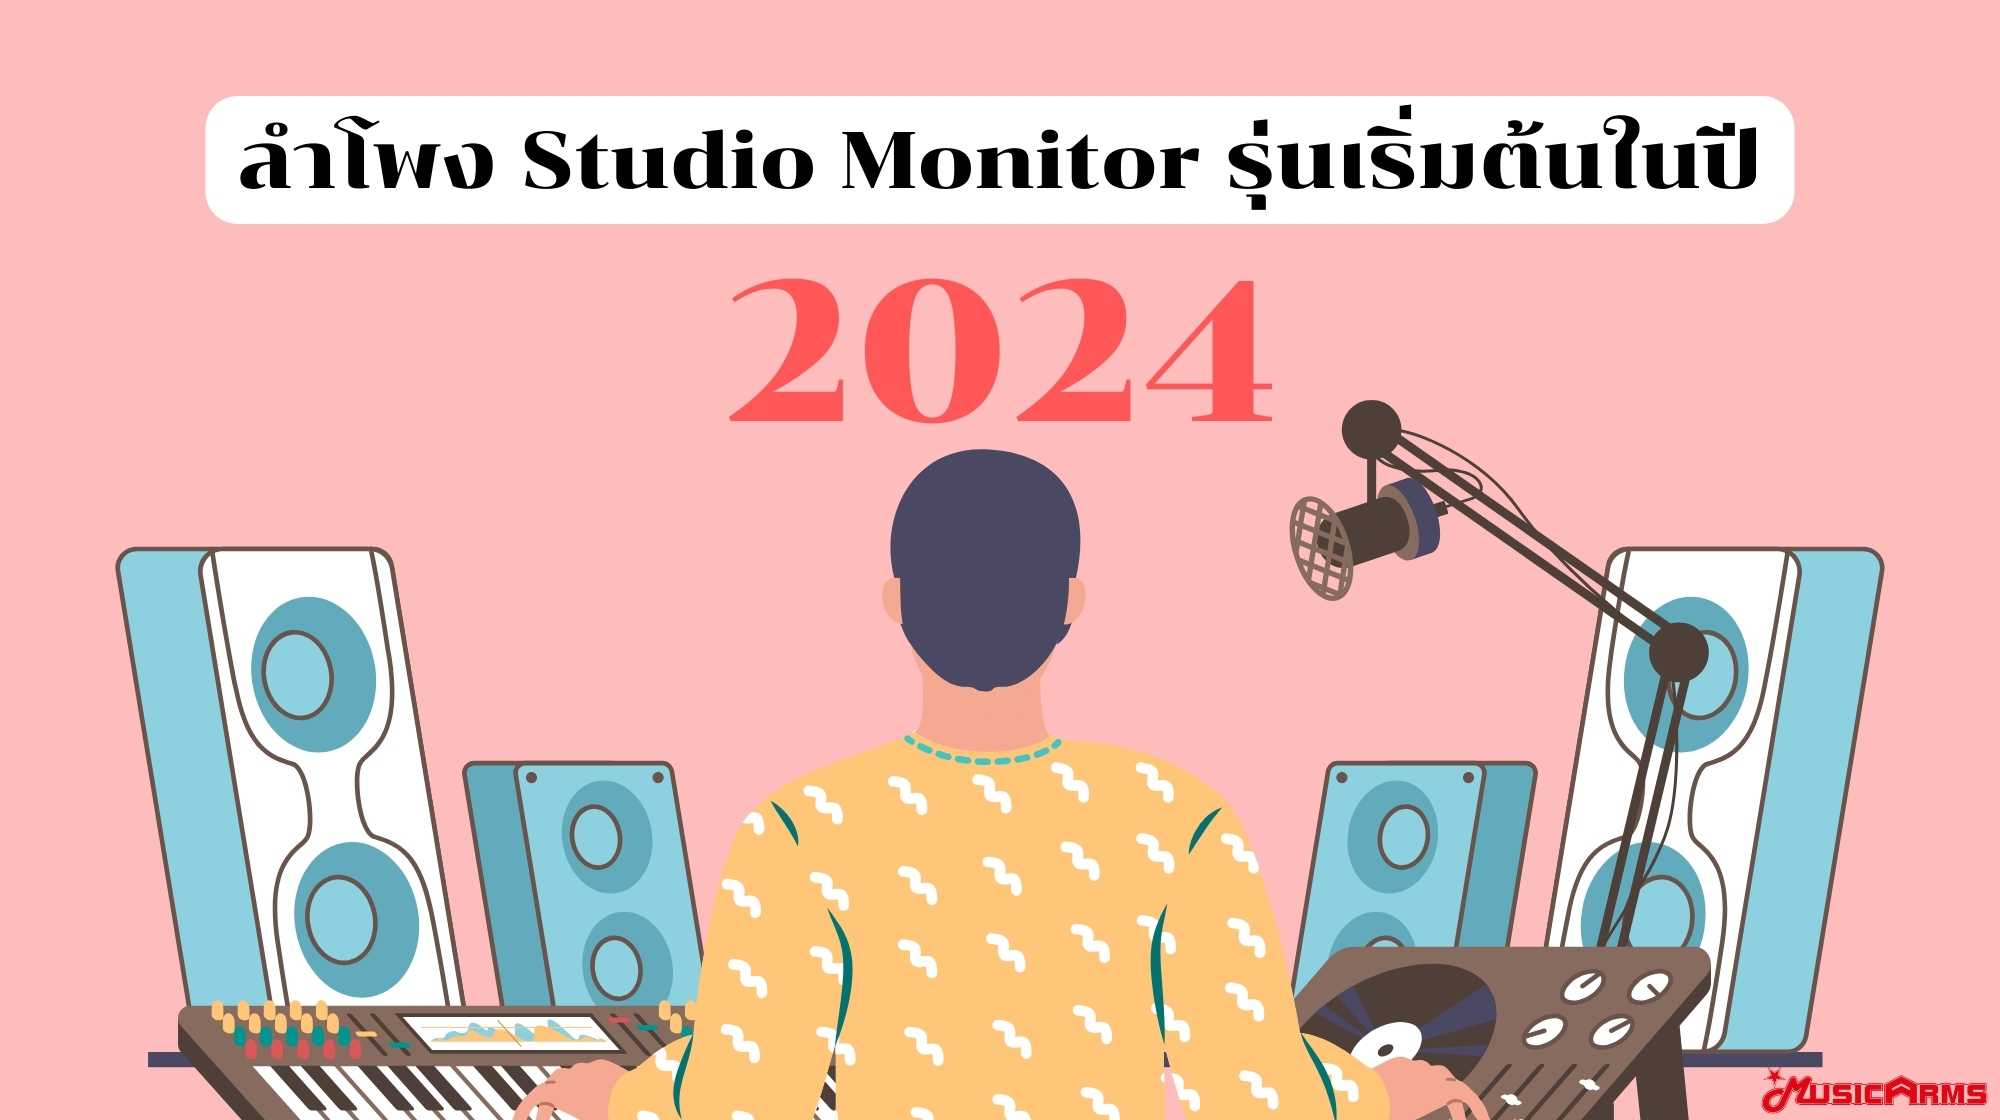 แนะนำลำโพง Studio Monitor รุ่นเริ่มต้นในปี 2024 ปก